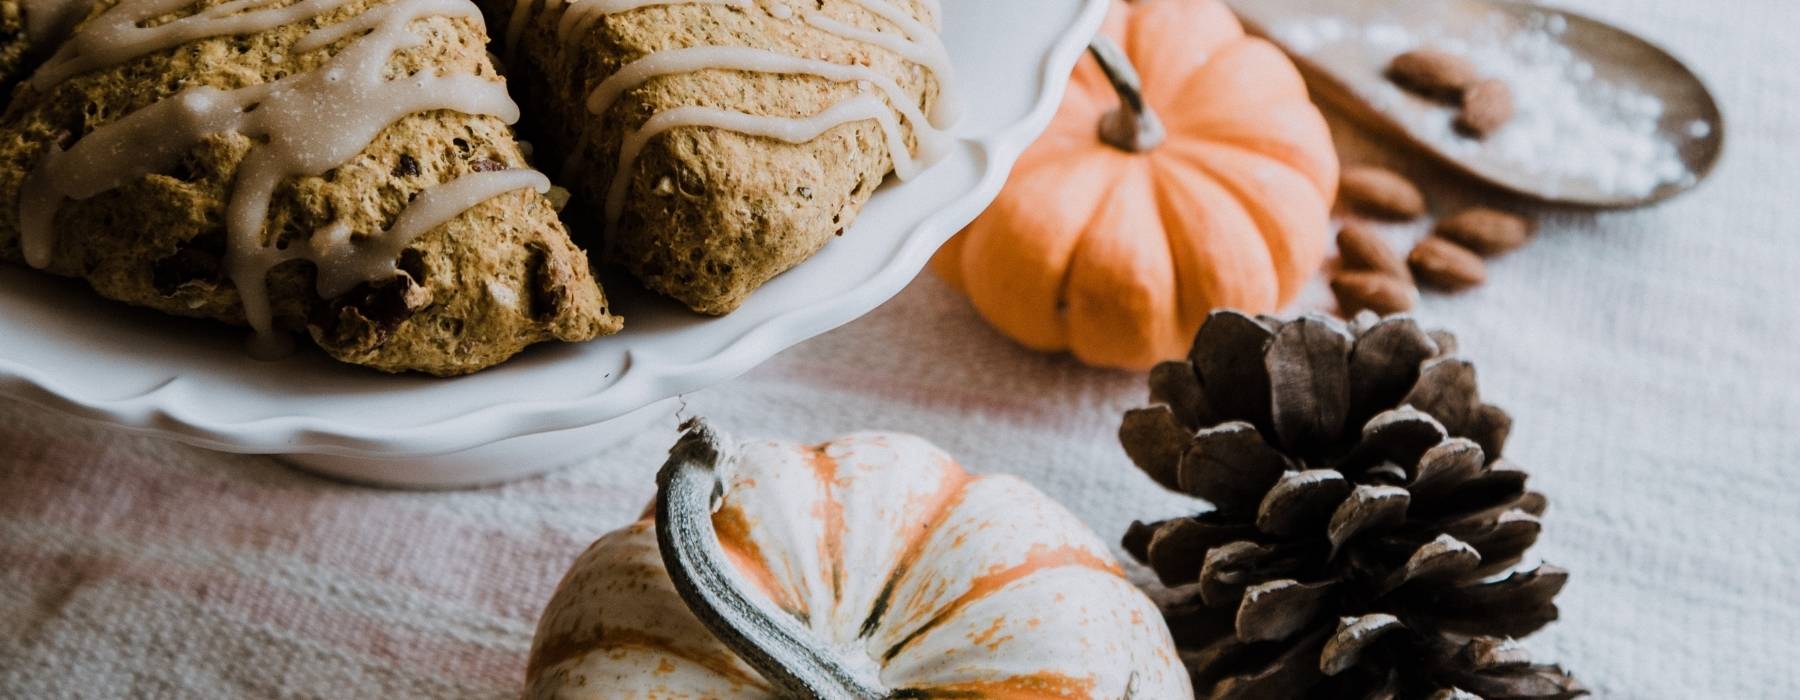 5 Best Pumpkin Recipes For Fall